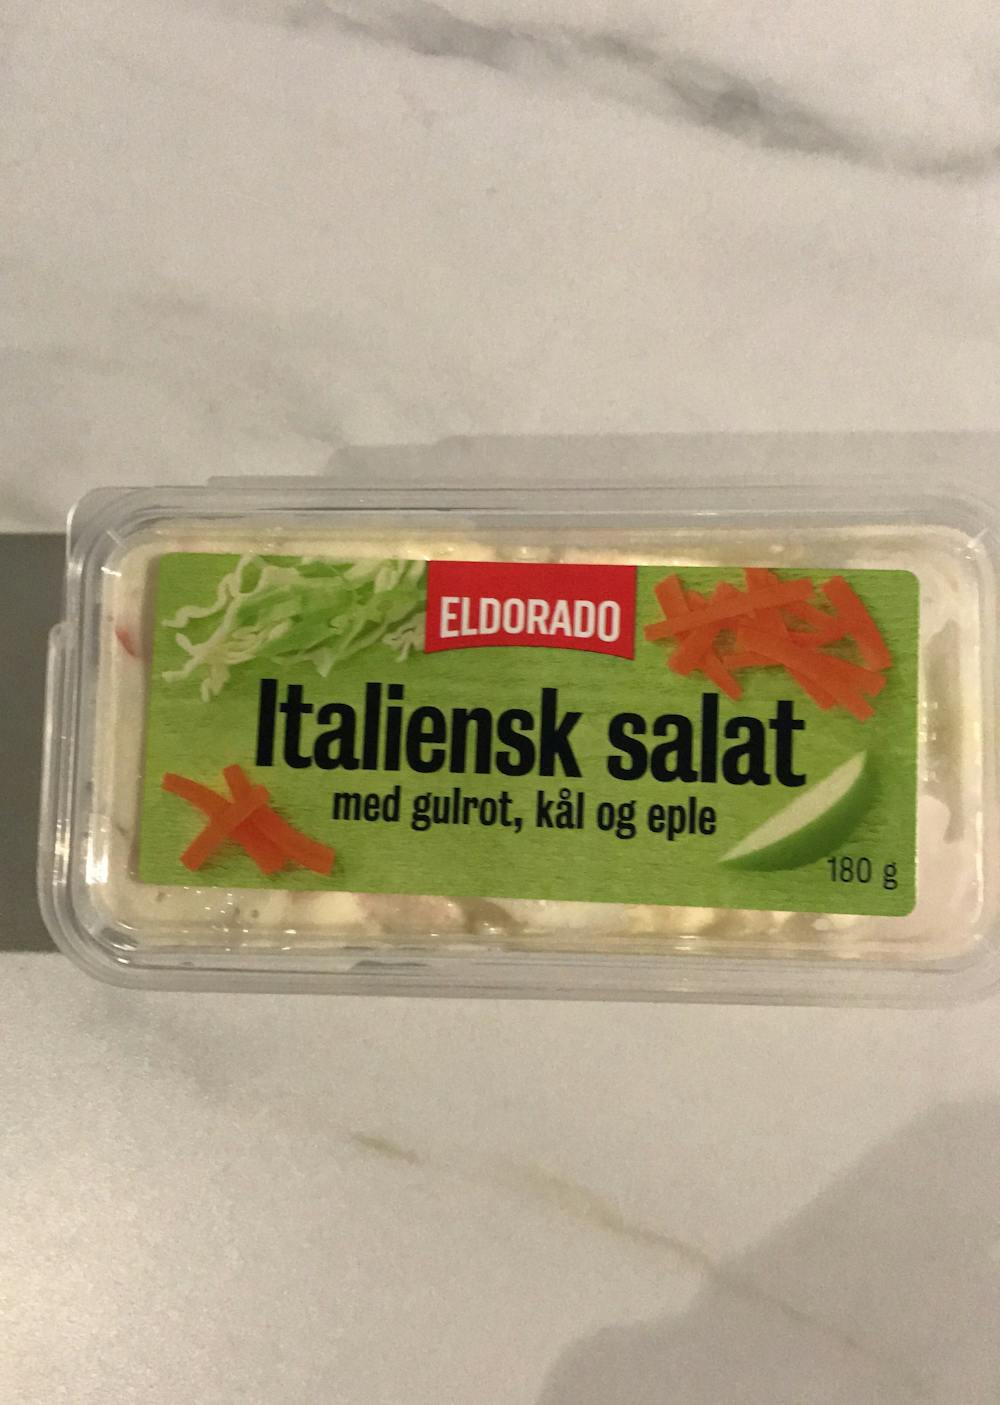 Italiensk salat med gulrot, kål og eple, Eldorado